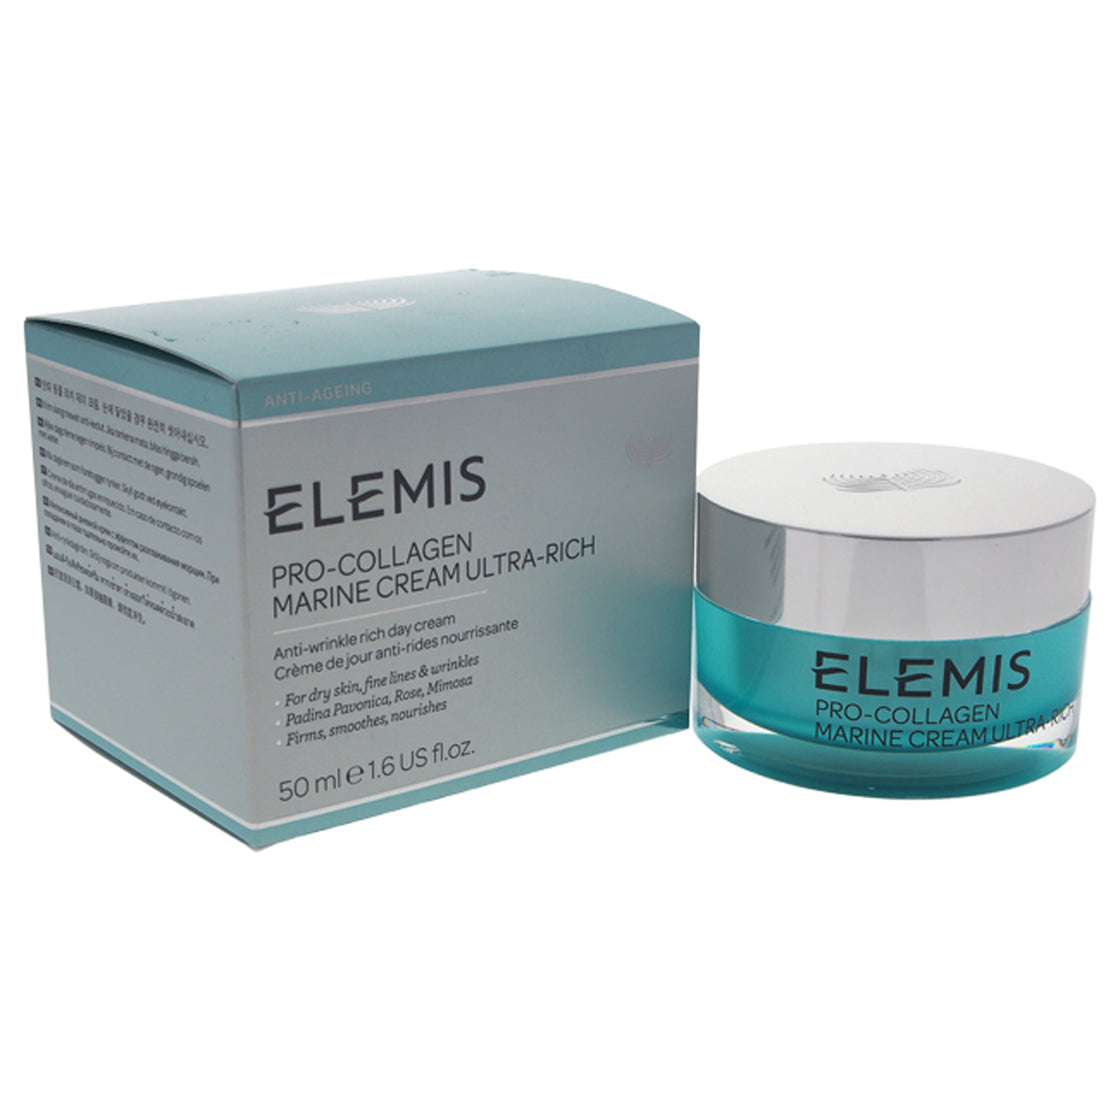 Pro-Collagen Marine Cream Ultra-Rich by Elemis for Unisex - 1.6 oz Cream